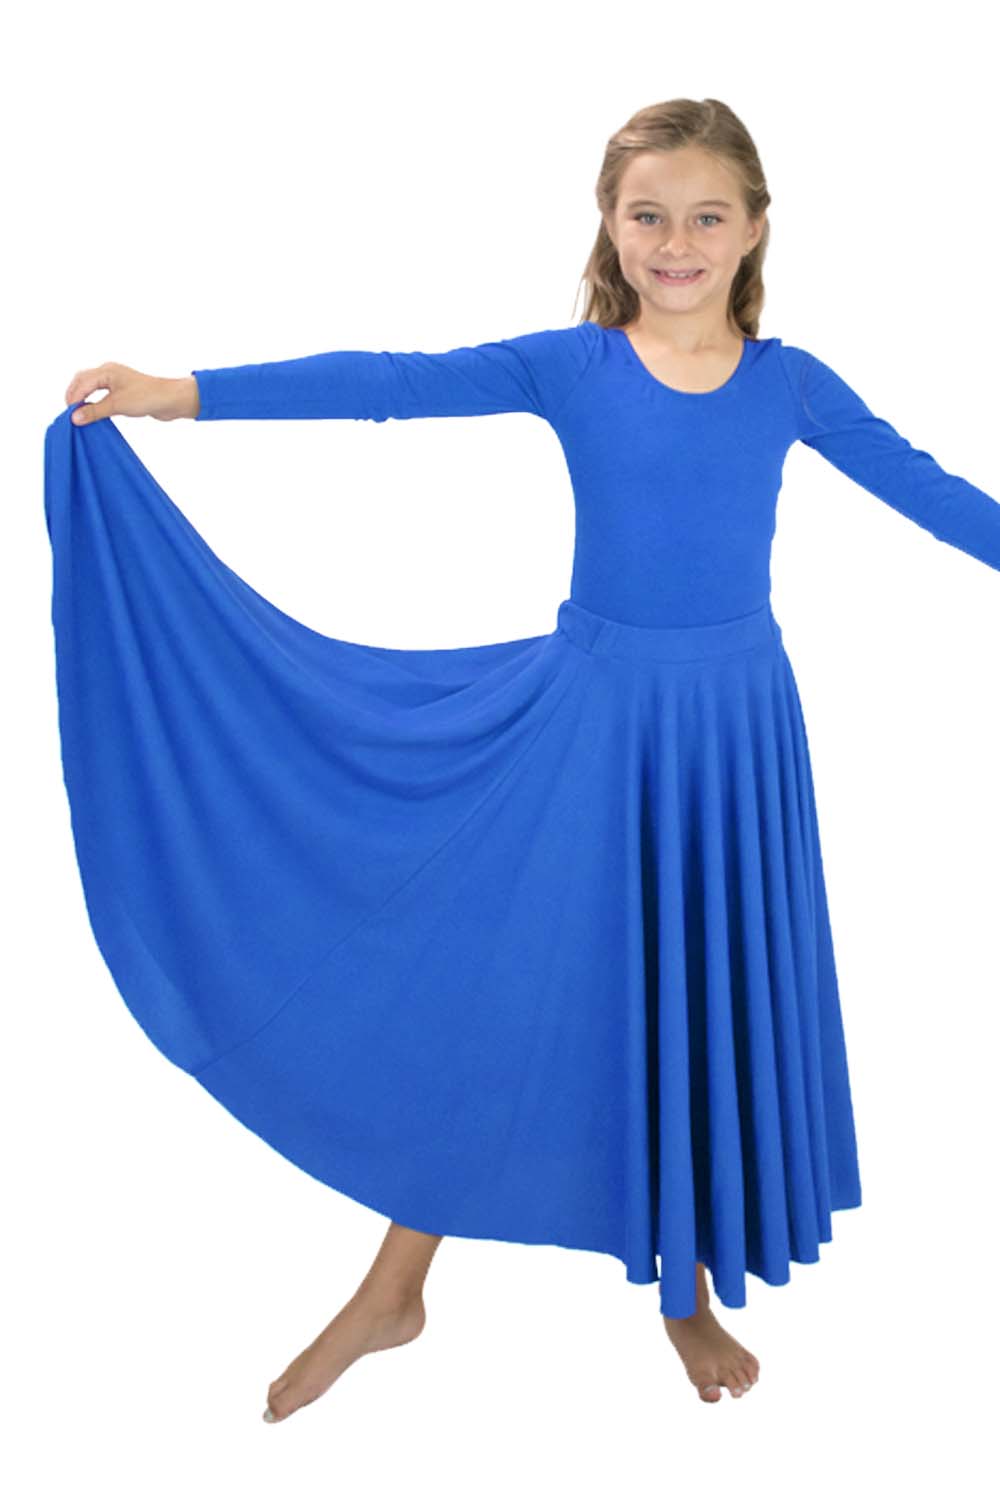 Girls Liturgical 540 Degree Skirt | Dancewear | Basic Moves™